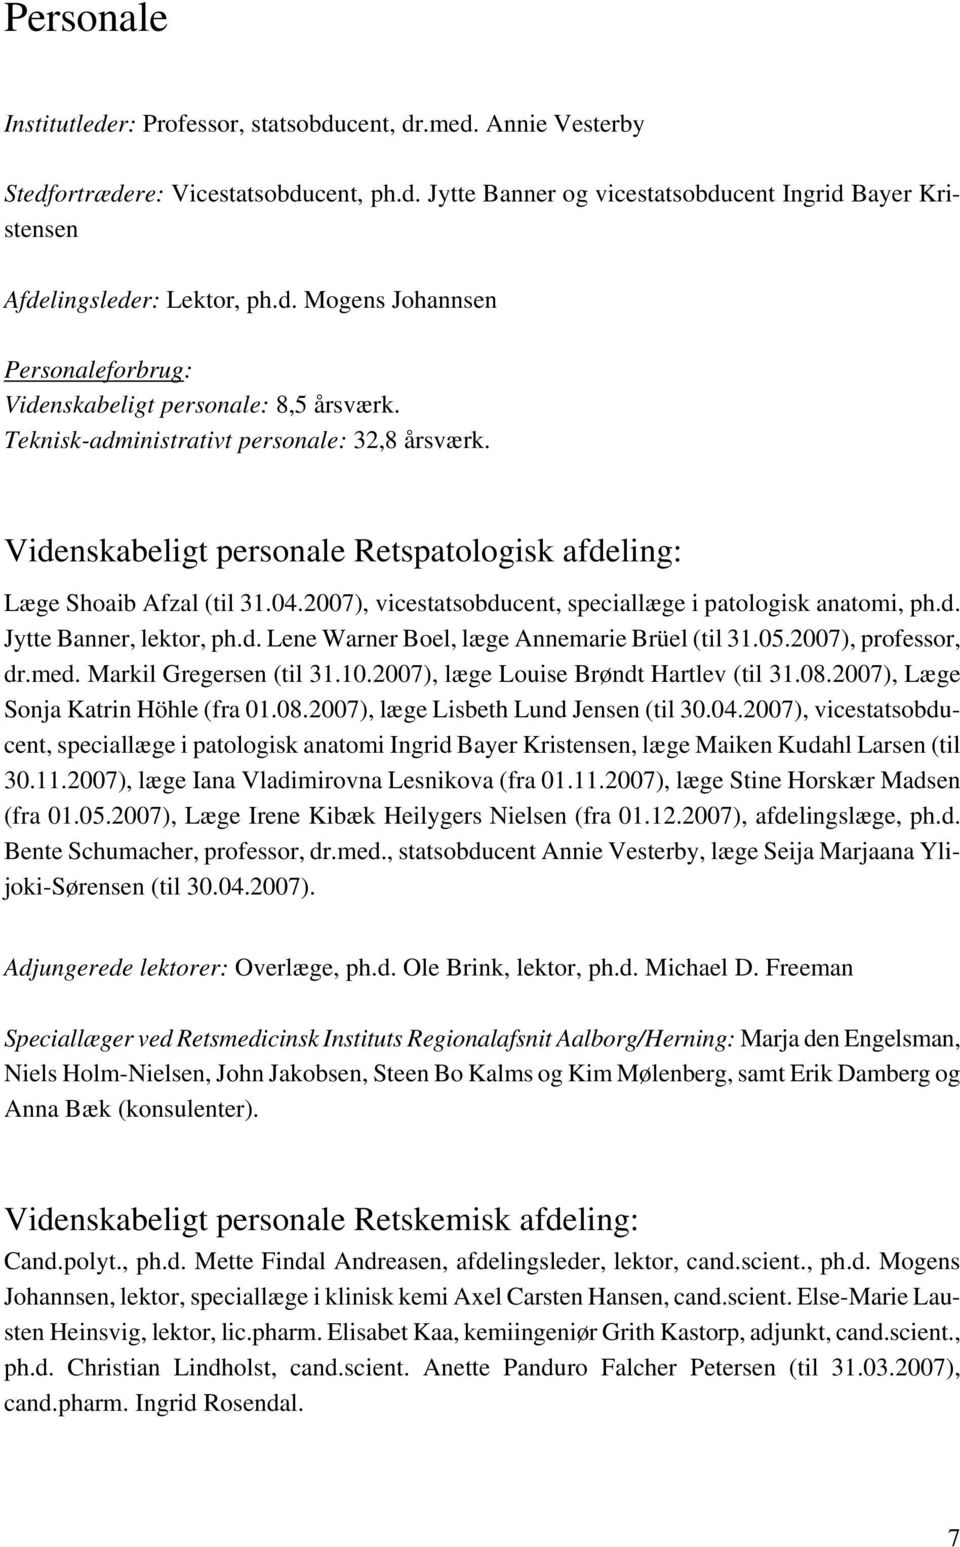 Videnskabeligt personale Retspatologisk afdeling: Læge Shoaib Afzal (til 31.04.2007), vicestatsobducent, speciallæge i patologisk anatomi, ph.d. Jytte Banner, lektor, ph.d. Lene Warner Boel, læge Annemarie Brüel (til 31.